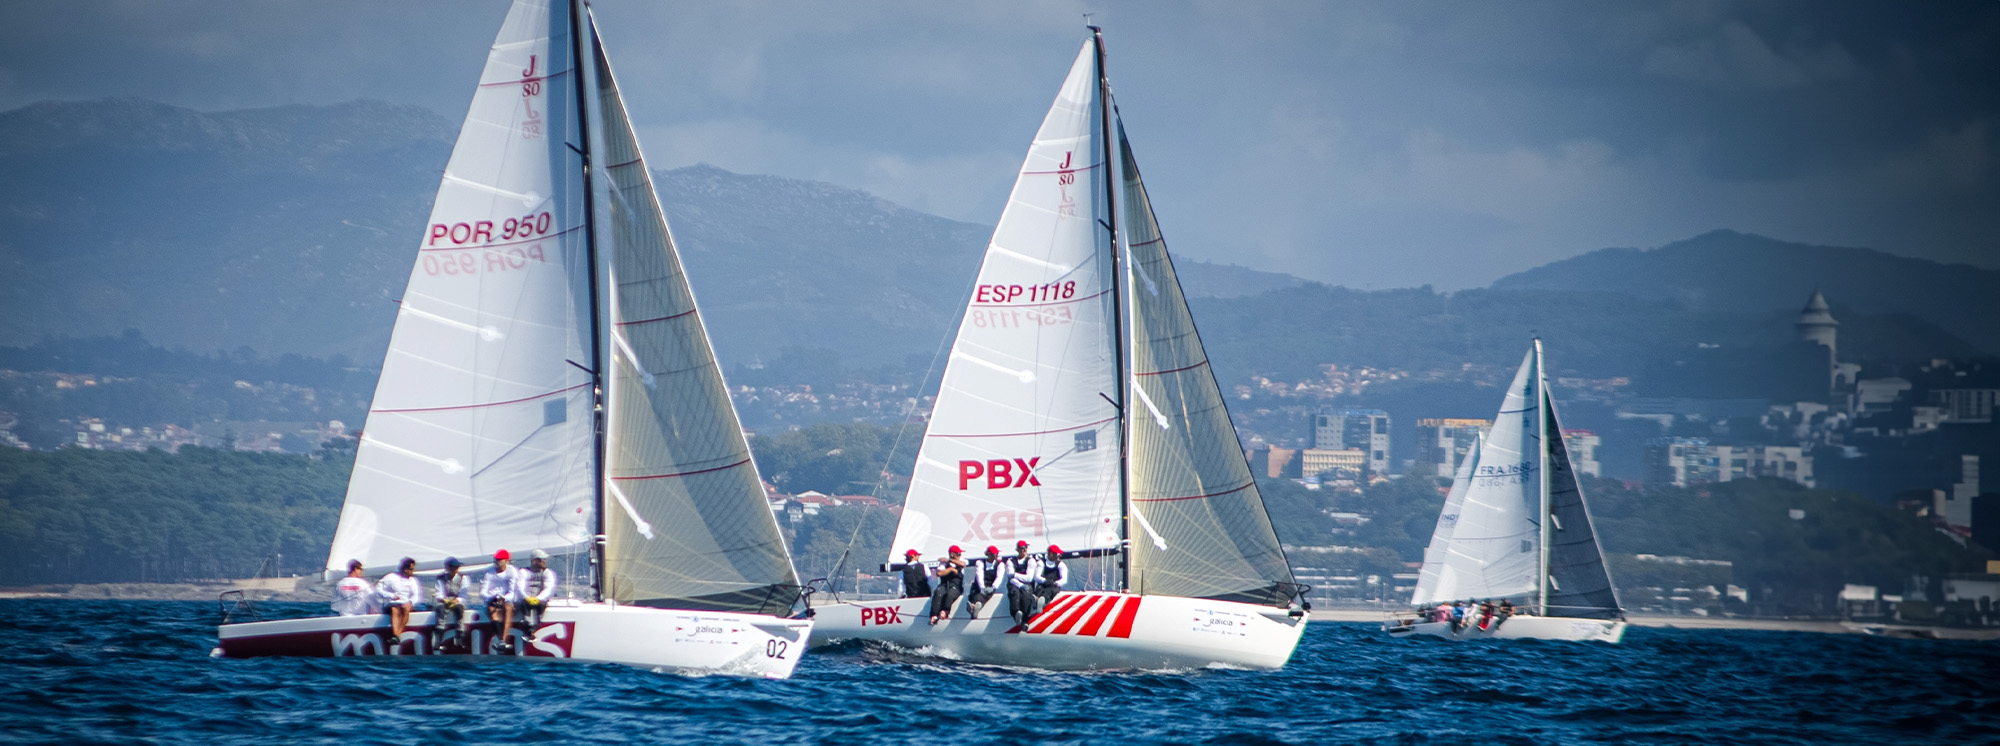 mundial j80 baiona - pbx sailing team - 01